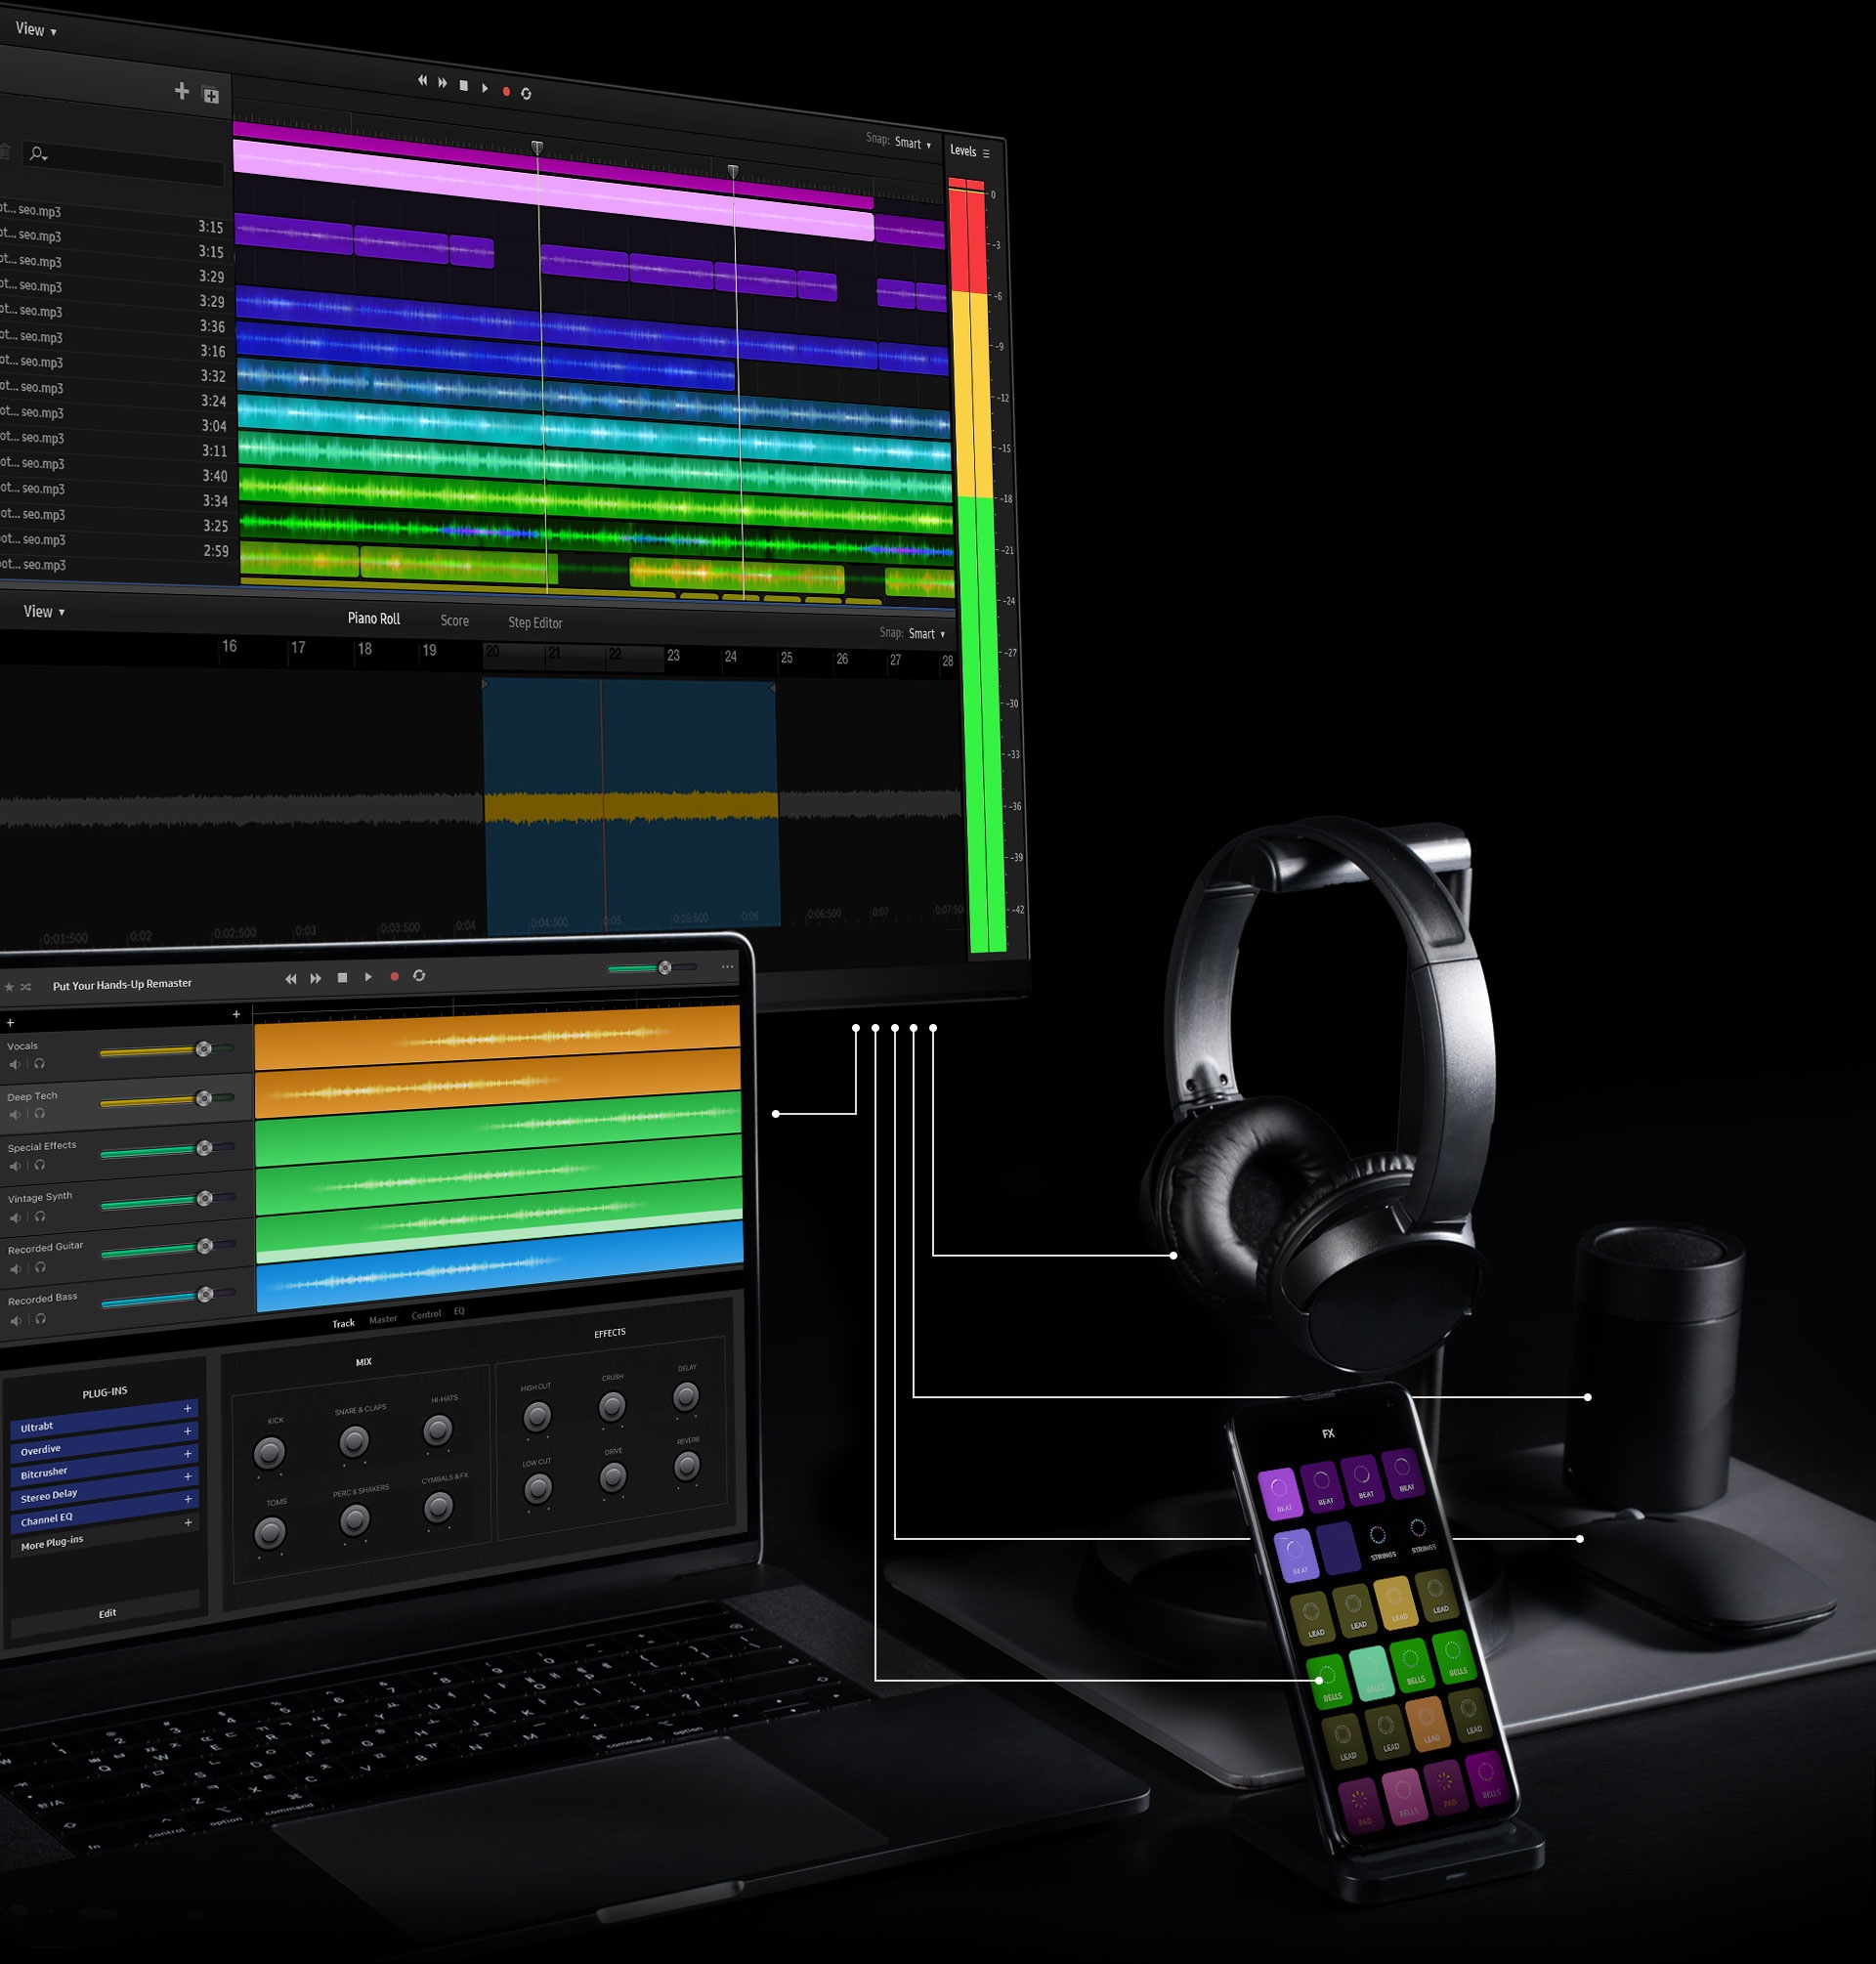 En fullständig konfiguration av arbetsytan inkluderar bildskärm, bärbar dator, mobil enhet, hörlurar, mus och högtalare. Vita linjer visar hur alla enheter kan anslutas tillsammans via monitorn. På skärmen på skärmen finns musikredigeringsprogram som visar flera lager av ett musikspår i gröna, blå, rosa och lila färger. På skärmen på den bärbara datorn, som är placerad strax under skärmen, visas en annan musikredigeringsprogramvara. Detta visar ytterligare musikspårlager i blått, grönt och orange. Den mobila enheten, placerad till höger om bildskärmen och den bärbara datorn, visar flera filteralternativ i lila, khaki grön, beige och brun färg.